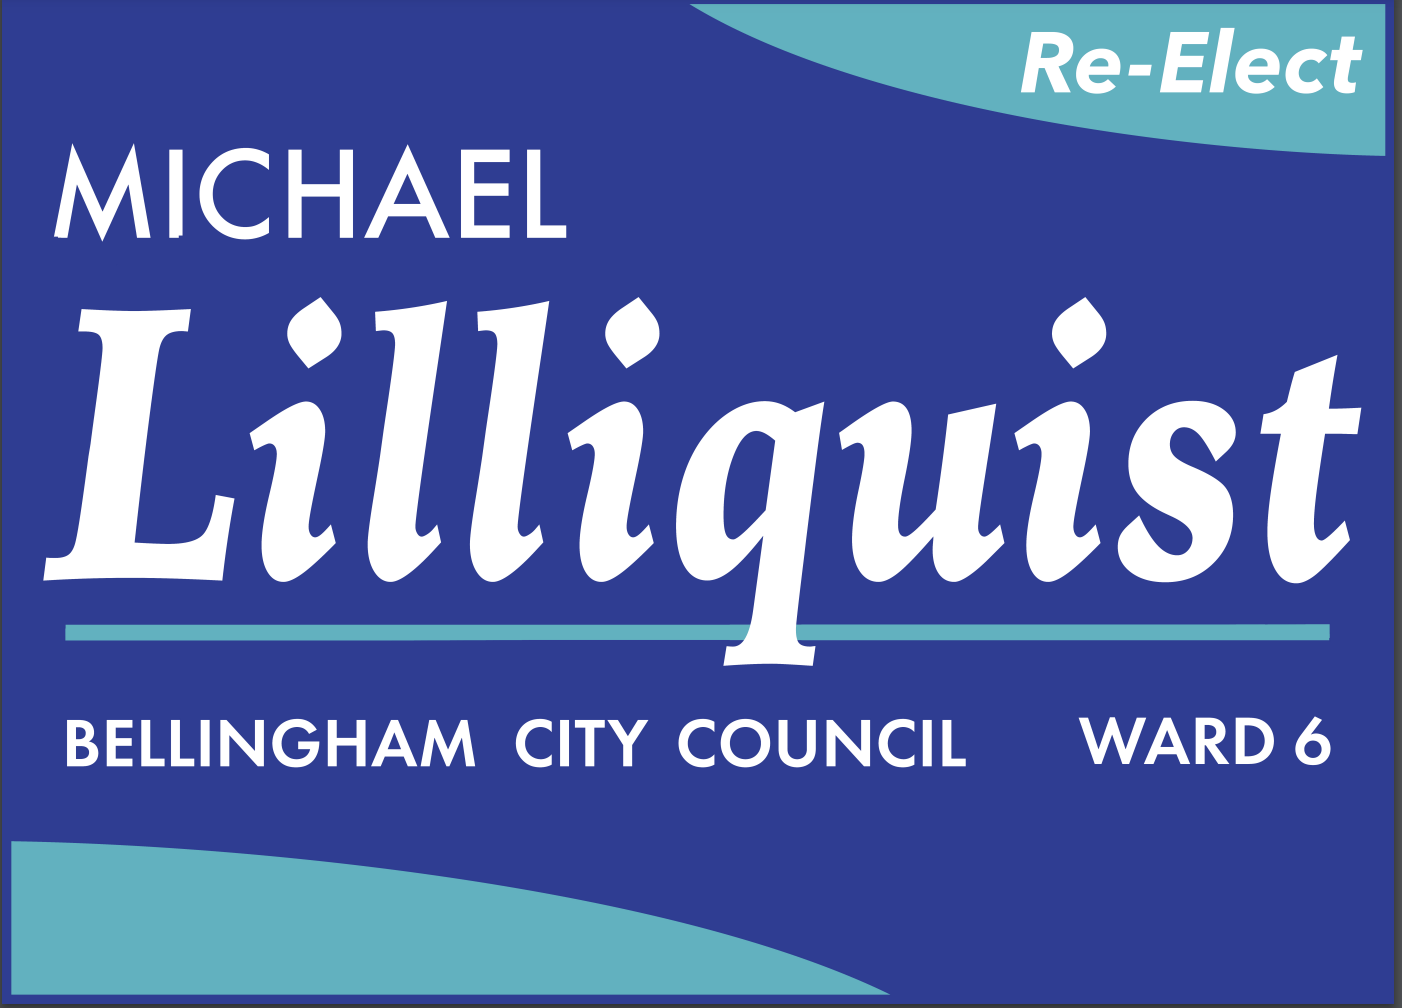 Michael Lilliquist for Bellingham City Council